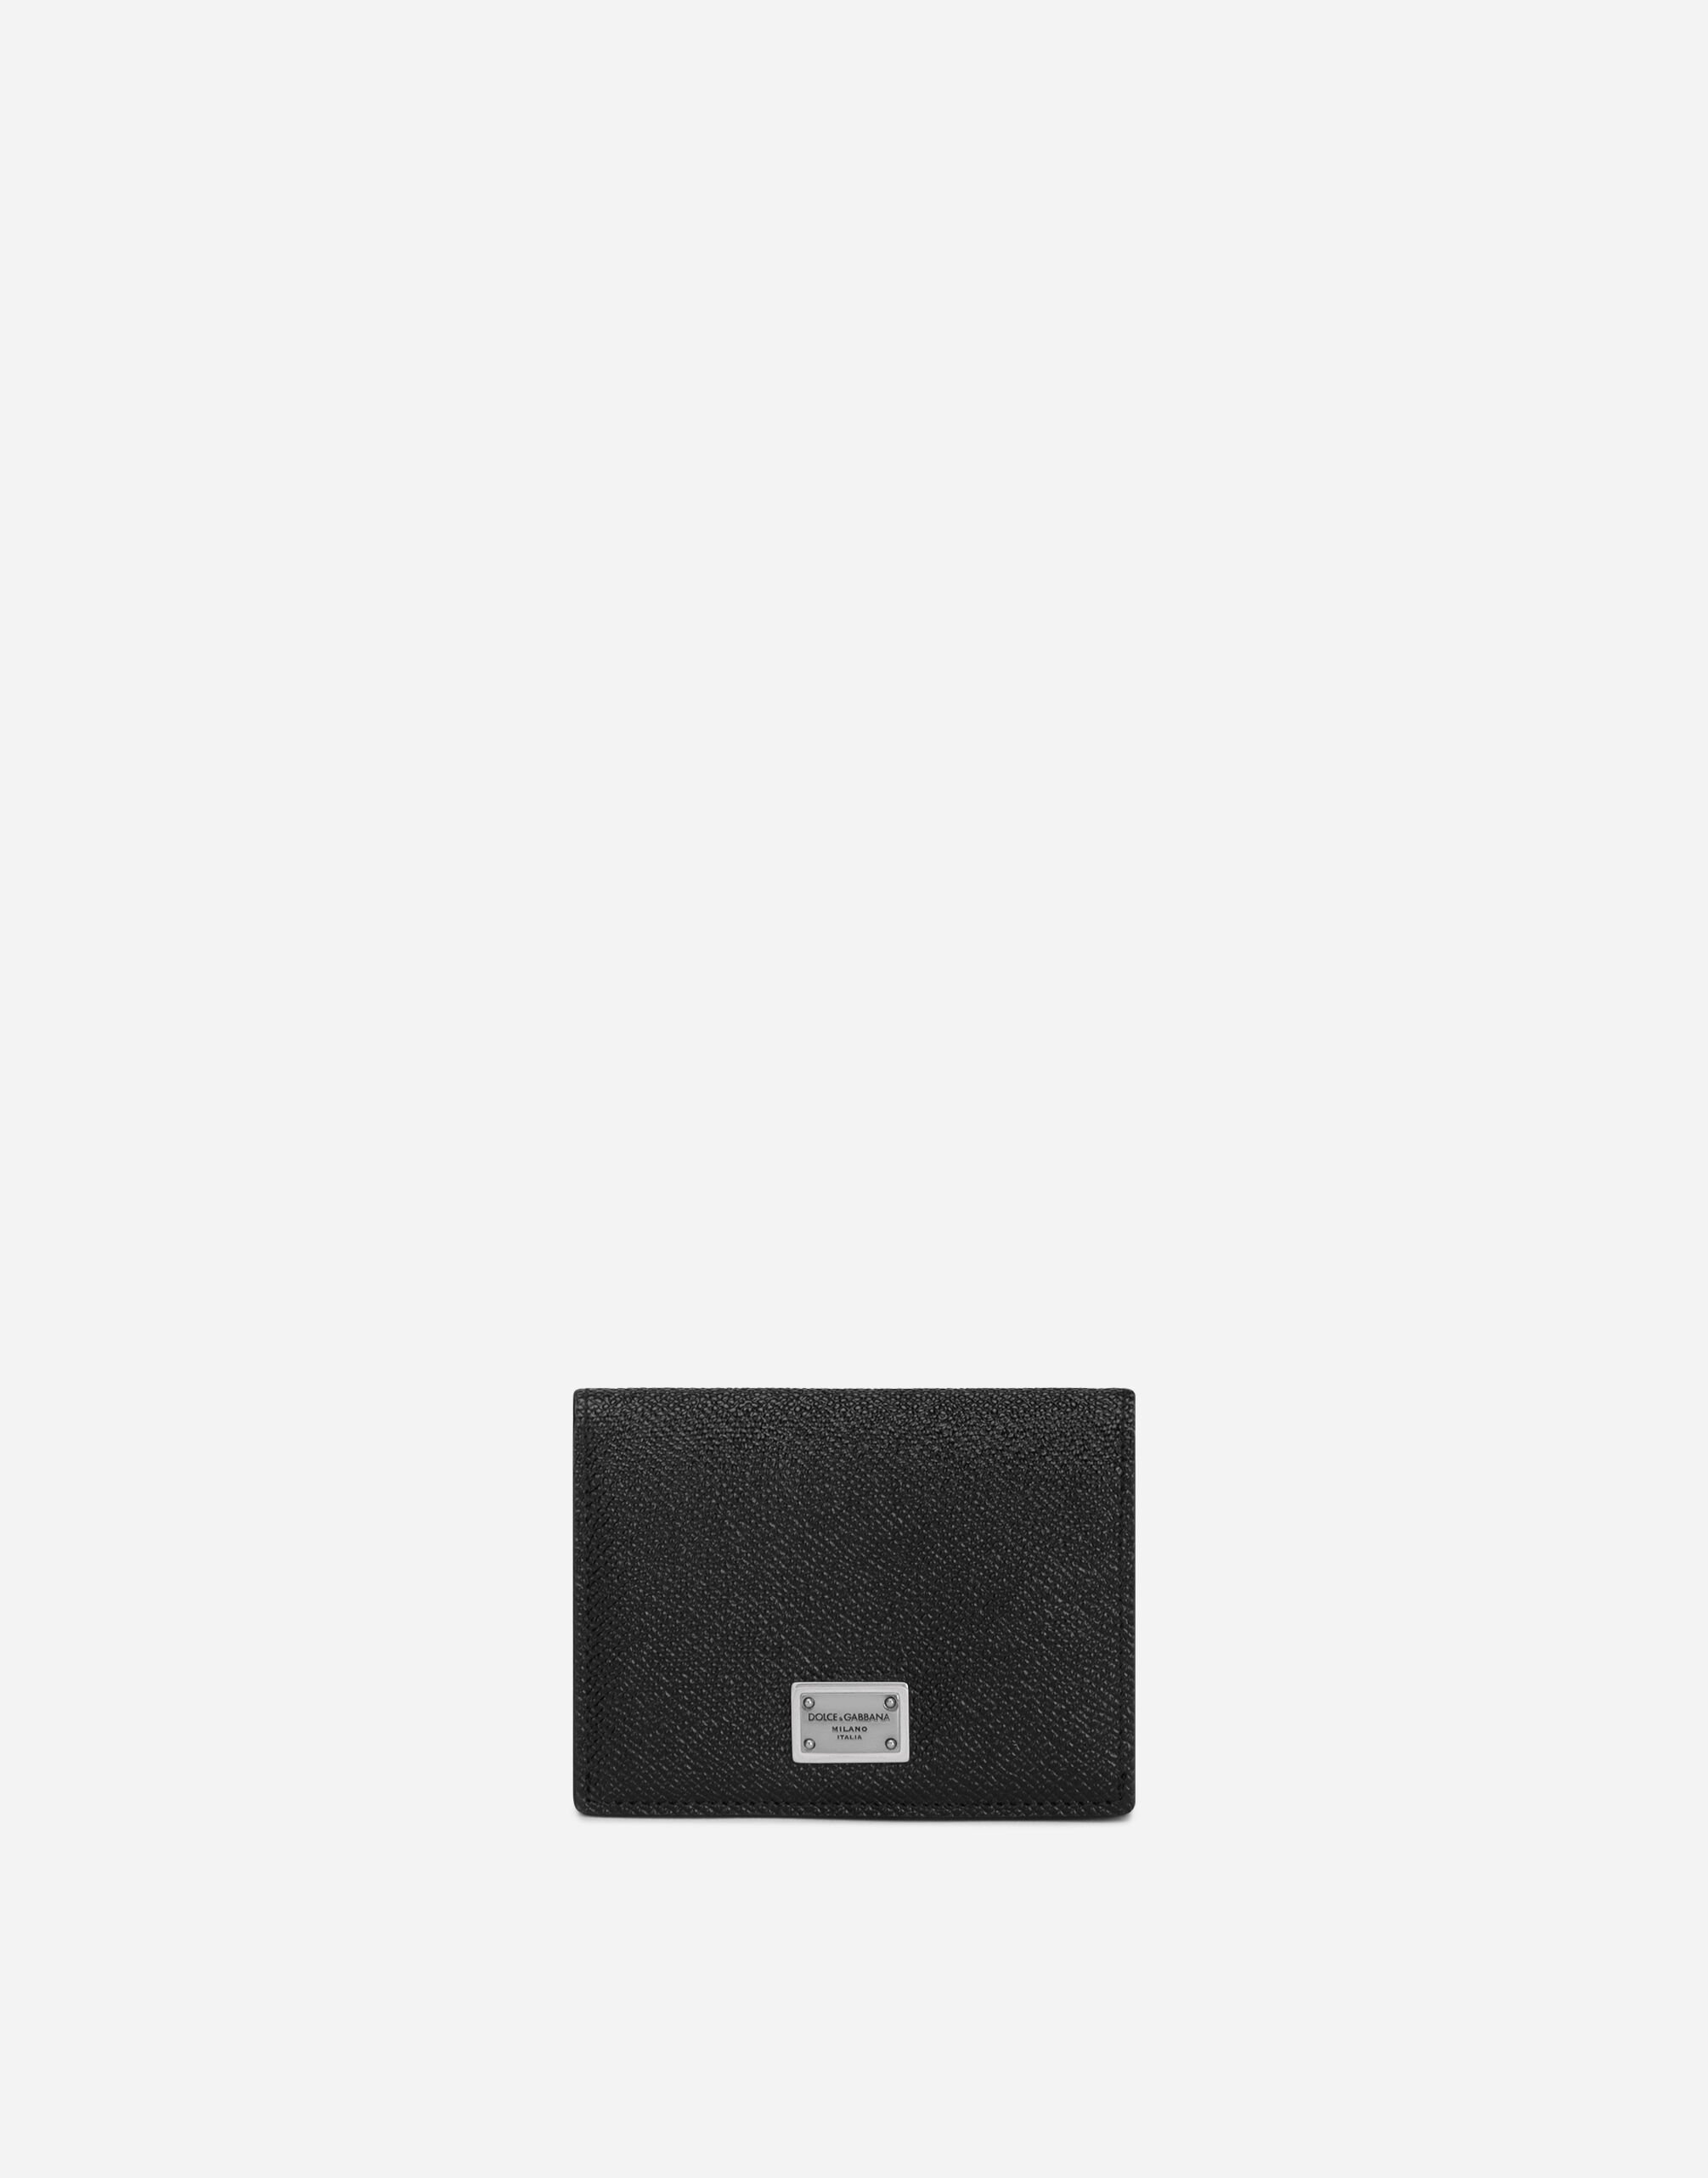 Dolce & Gabbana カードケース カーフスキン ロゴプレート ブラック GH706ZGH892